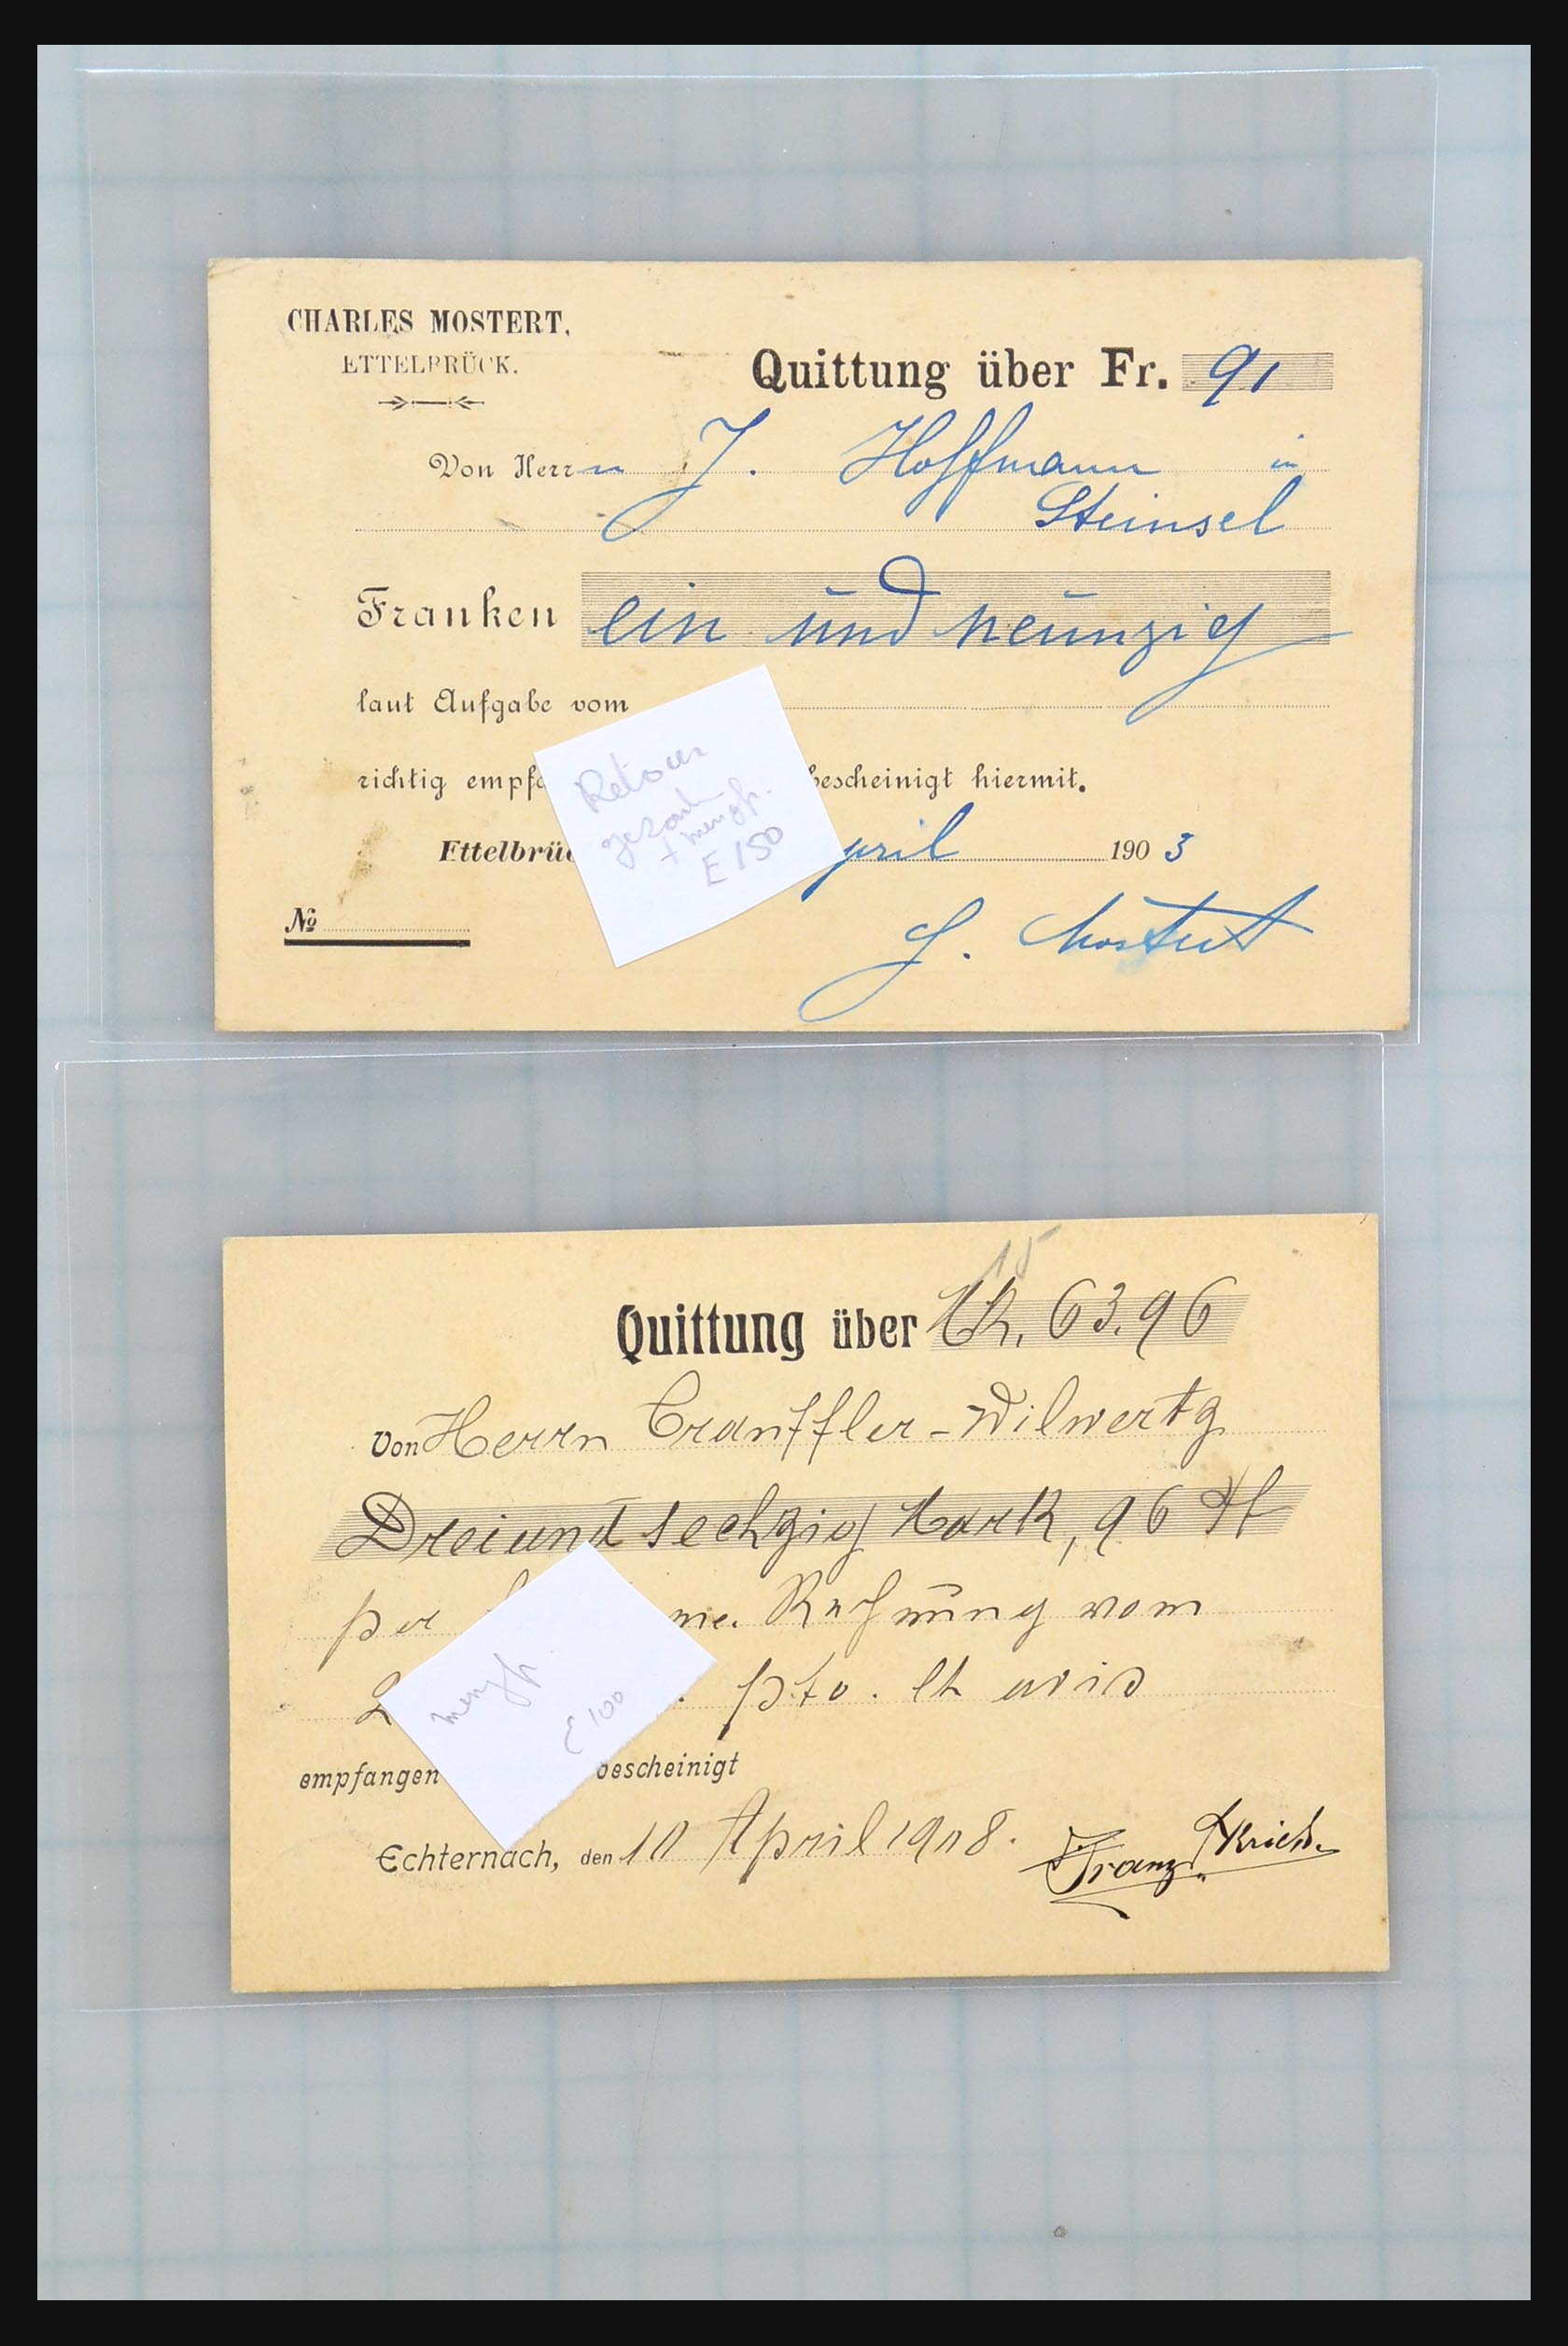 31358 047 - 31358 Portugal/Luxemburg/Griekenland brieven 1880-1960.